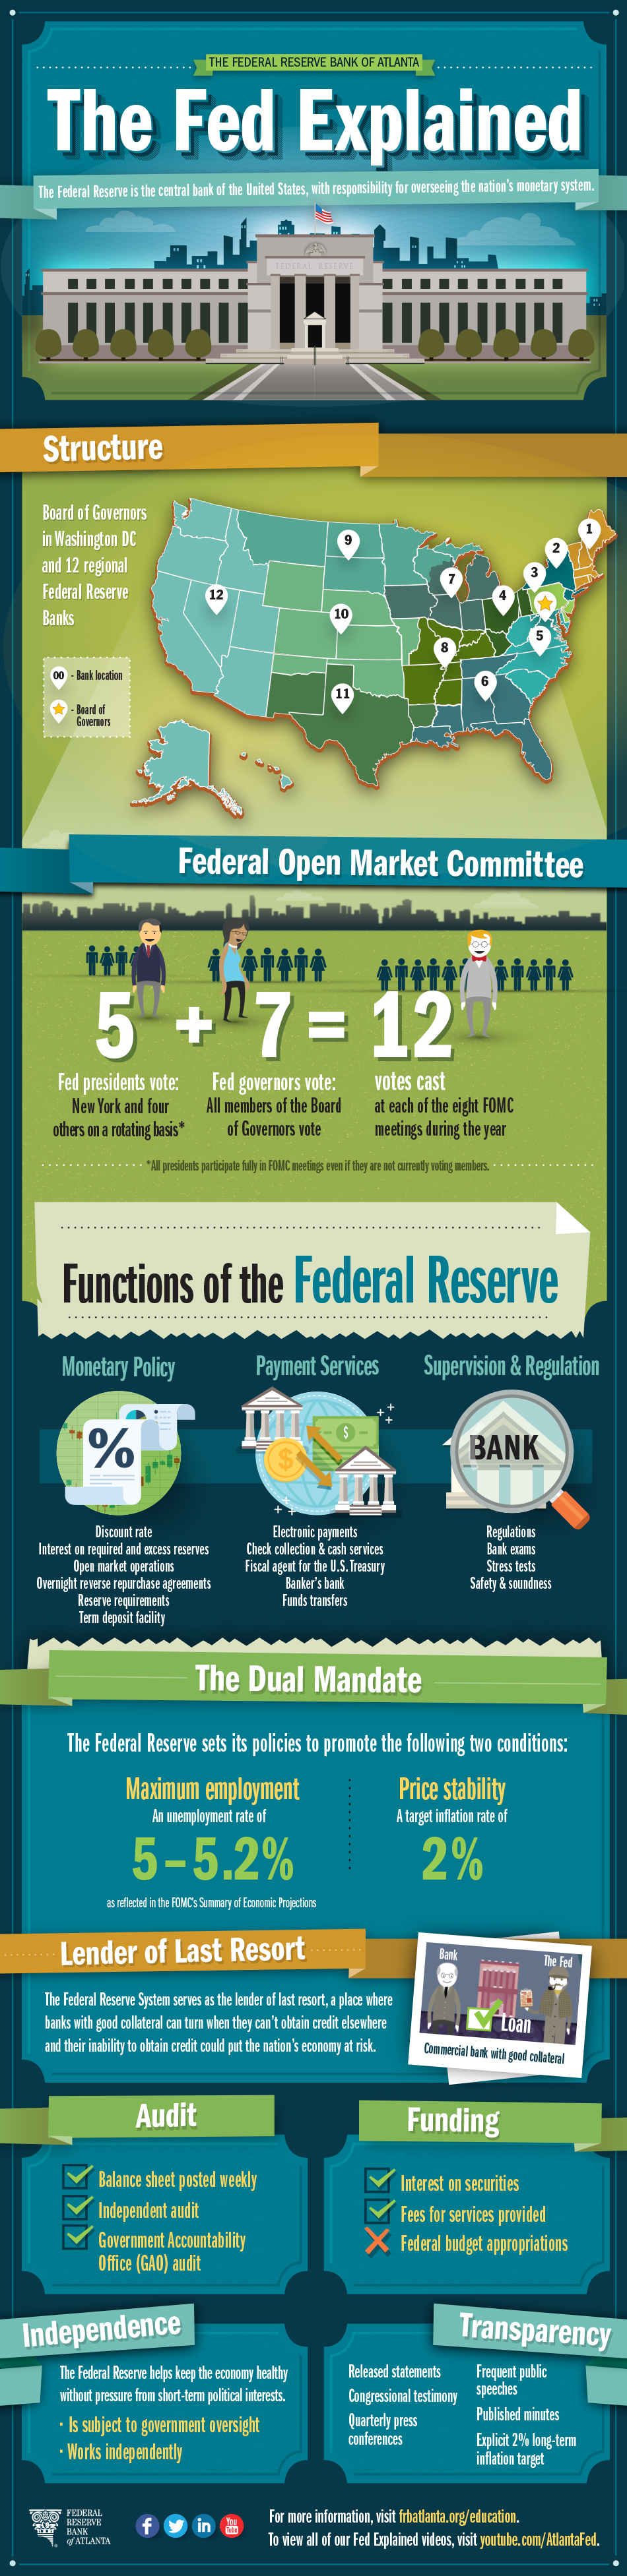 資訊圖像案例_Federal Reserve Bank of Atlanta_The Fed Explained